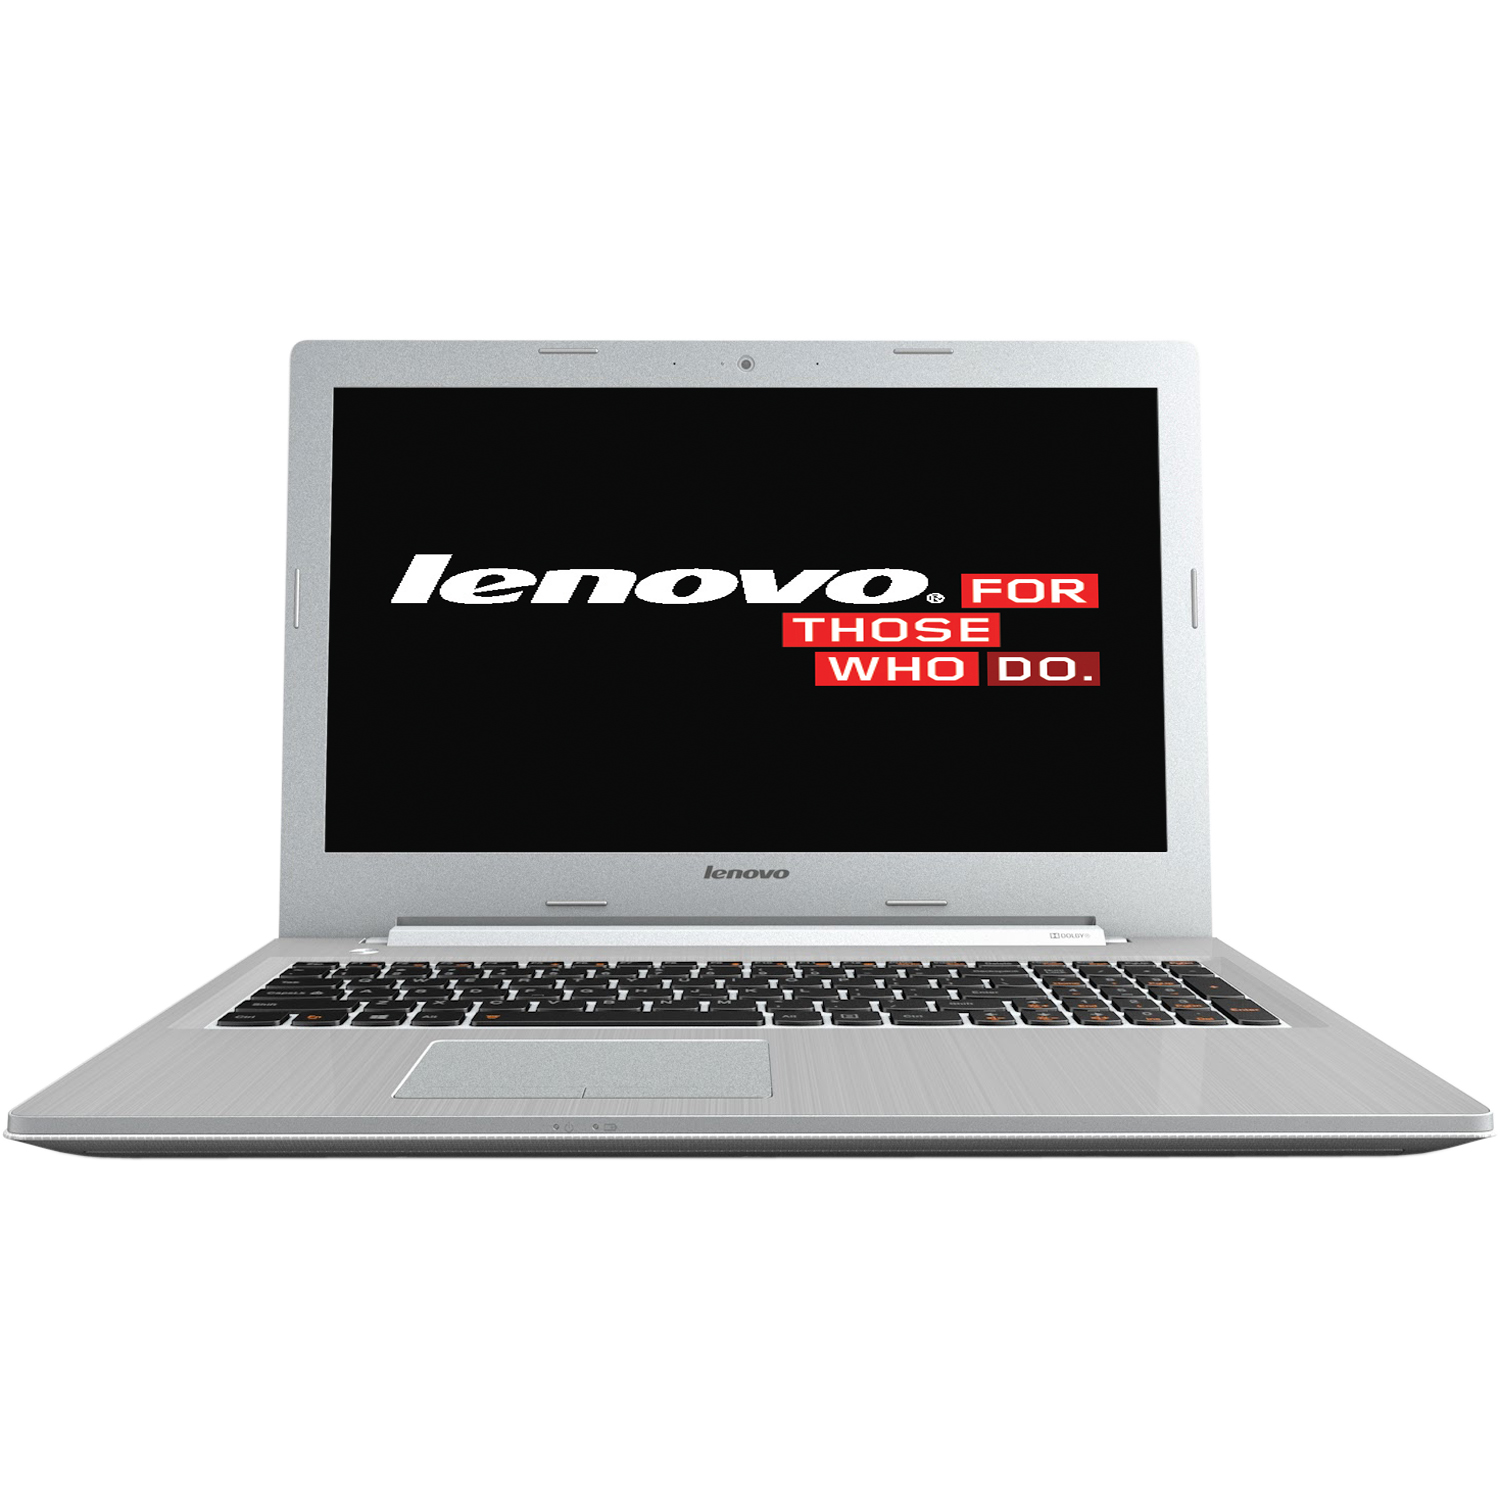  Laptop Lenovo IdeaPad Z50-75, AMD A10-7300, 8GB DDR3, HDD 1TB, AMD Radeon R6 M255DX 2GB, Free DOS 